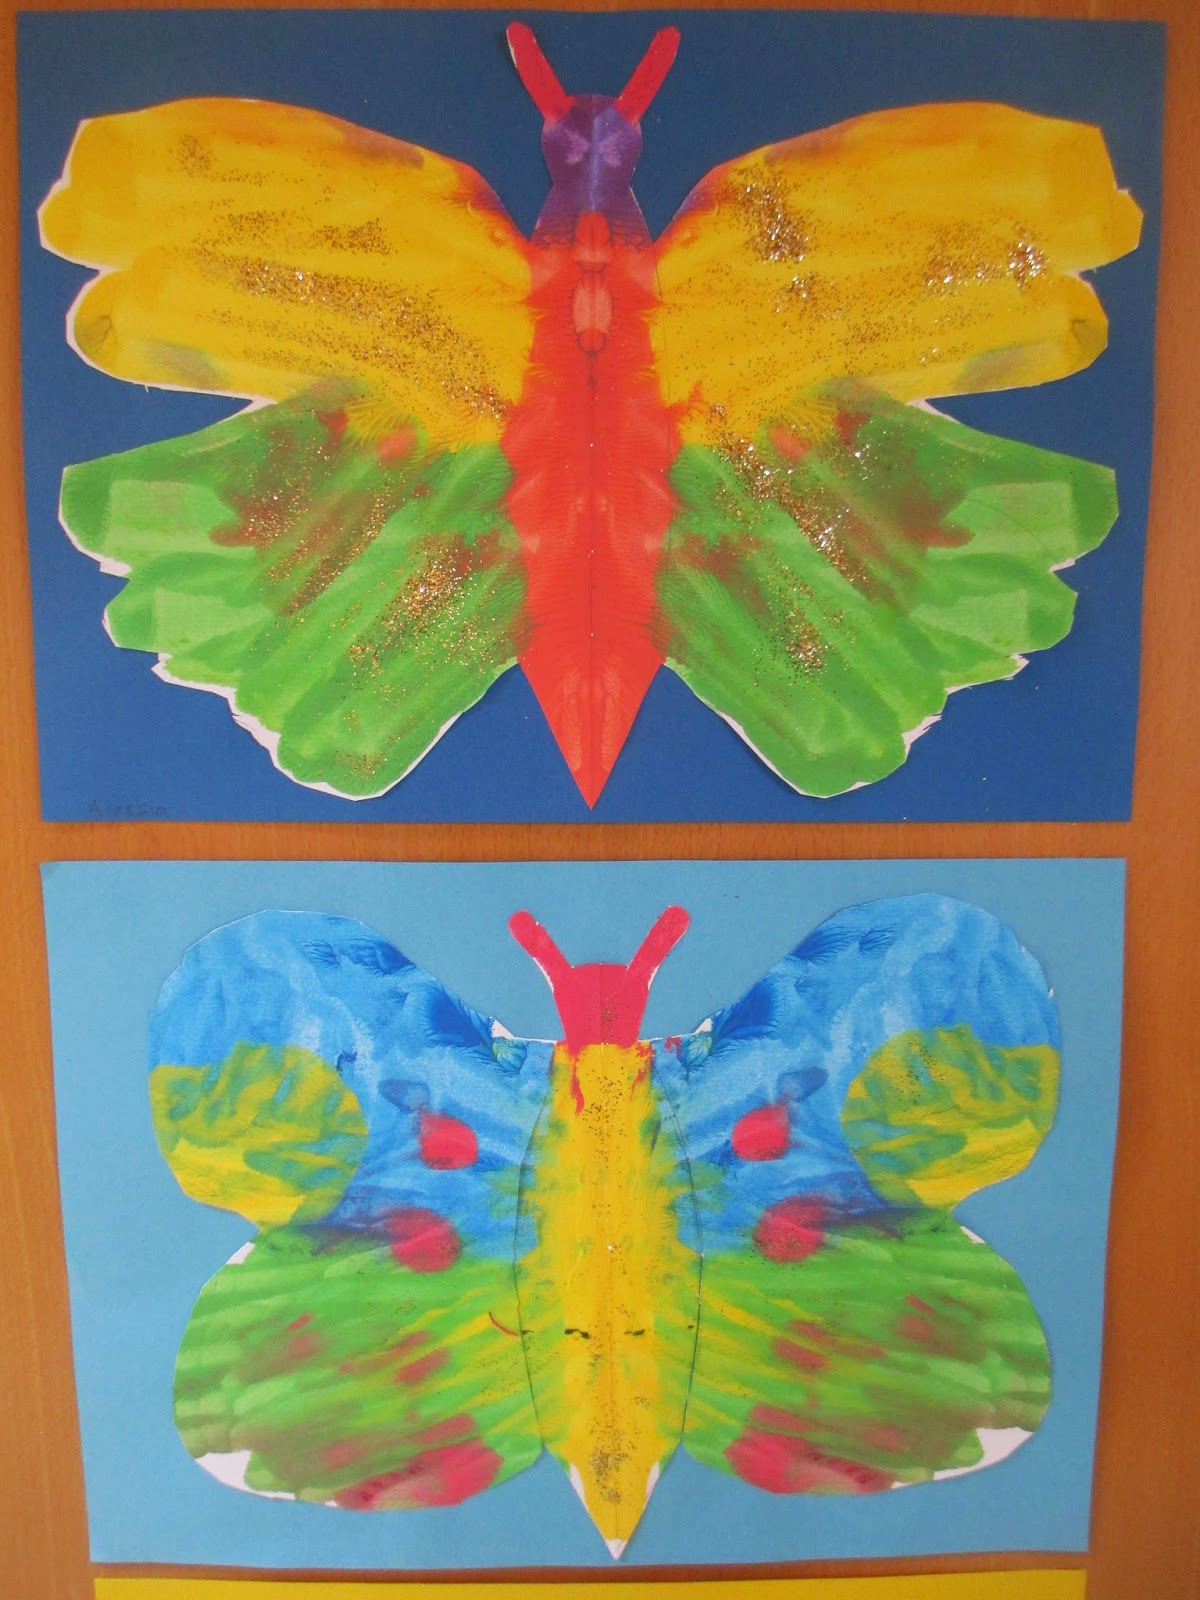 Bilder Zu Wasserfarben Malen Mit Kindern Ideen für Kinder Bilder Malen Ideen